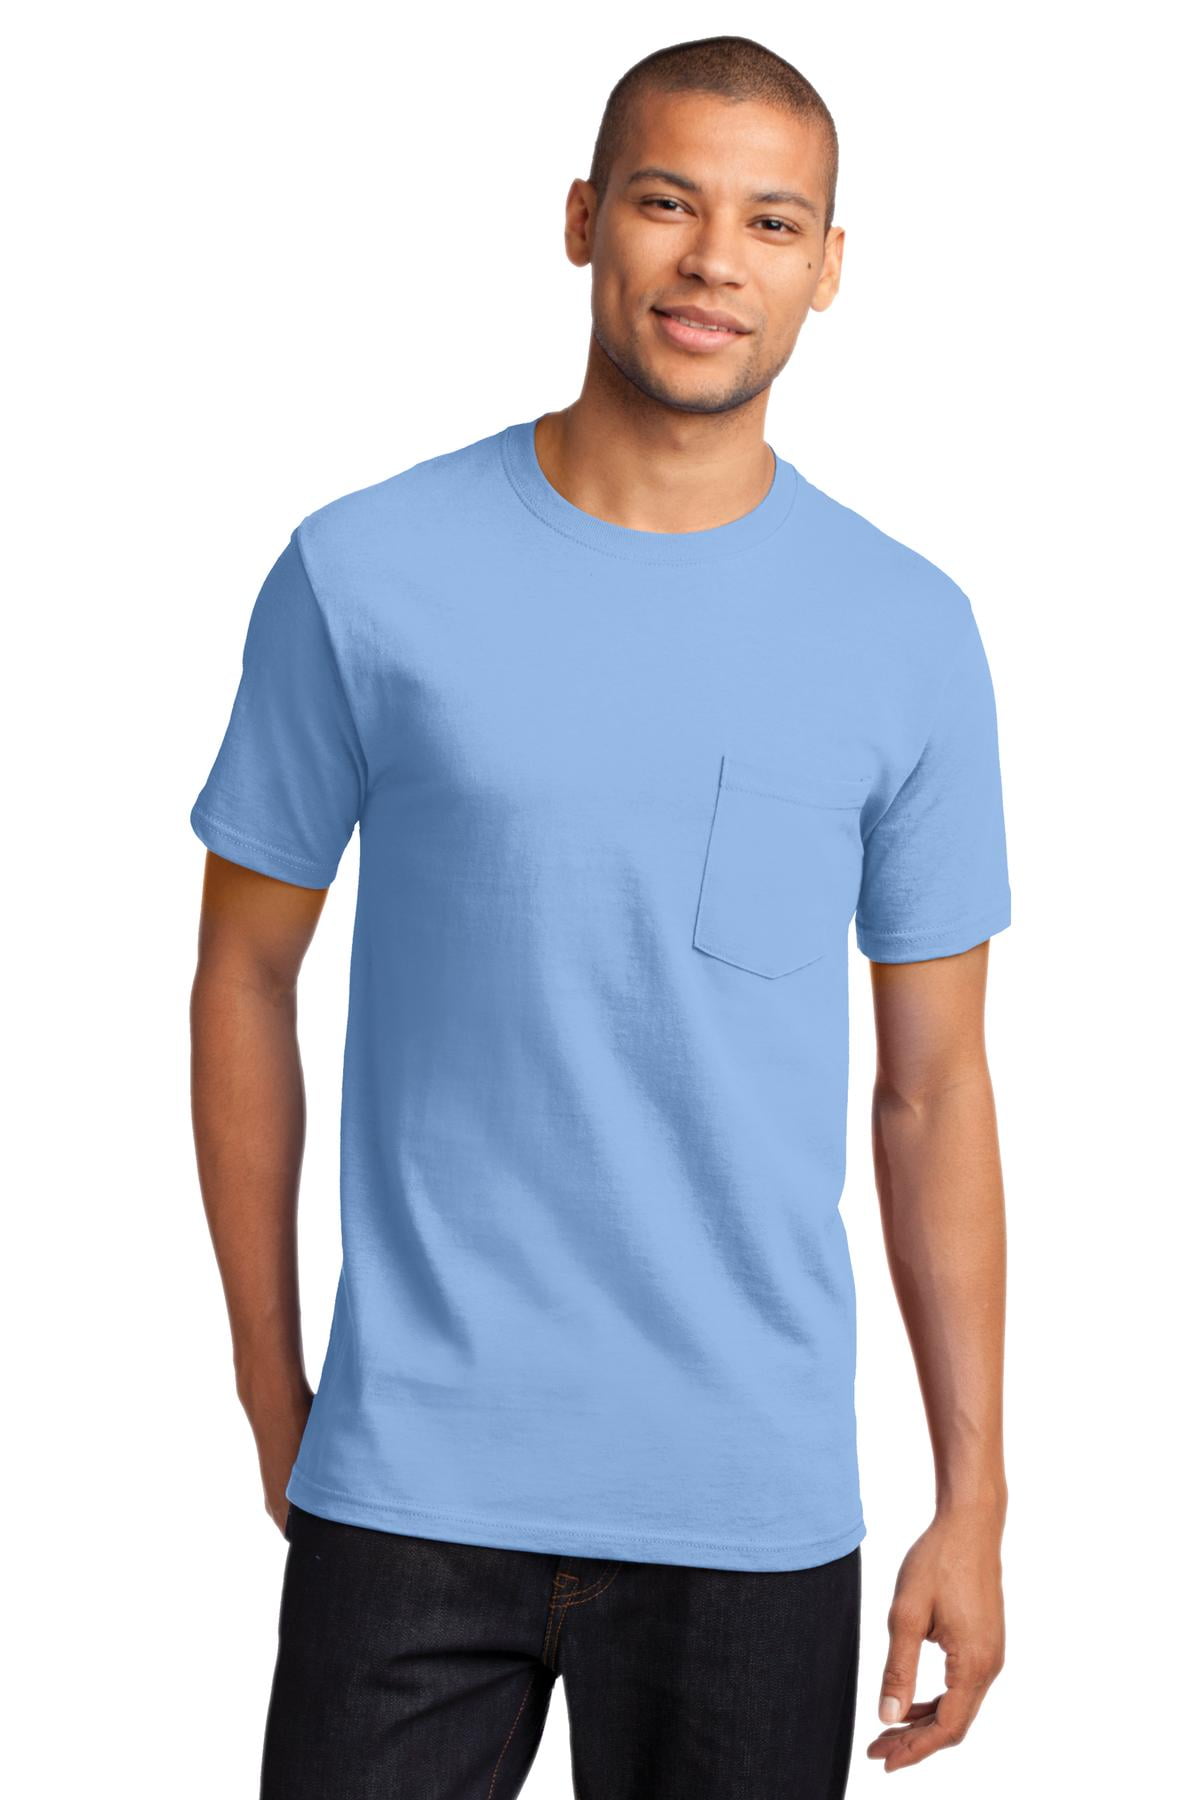 Essential T-Shirt with Pocket. Light Blue. S - Walmart.com